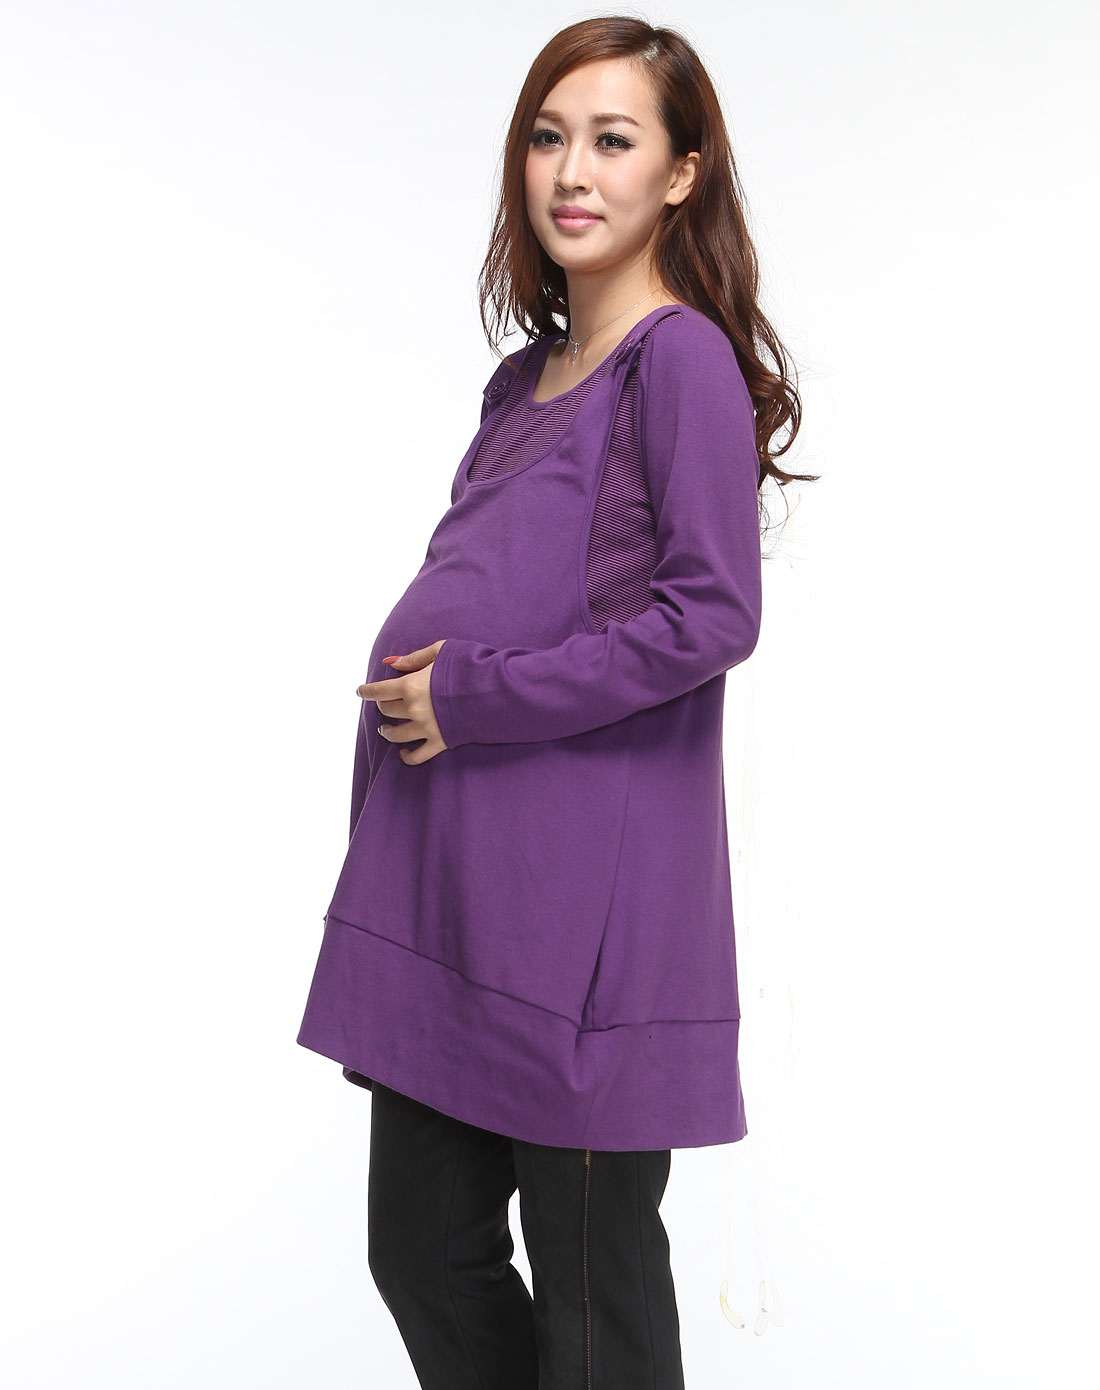 奇妮&肯勒芳孕妇装奇妮深紫色假两件条纹时尚长袖衫